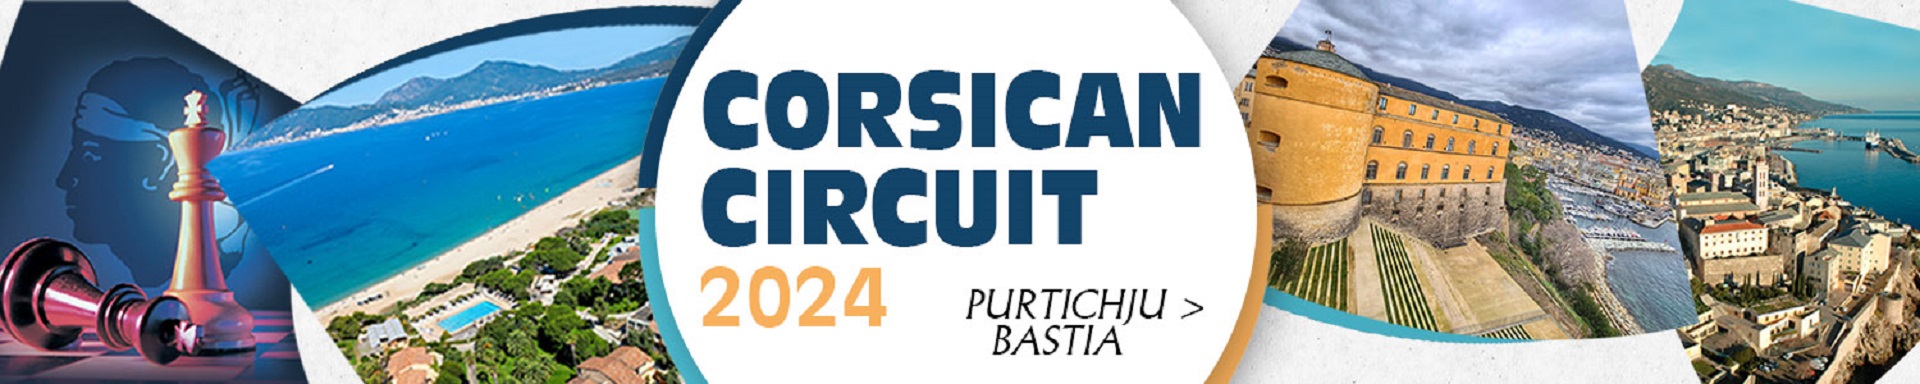 Corsican Circuit 2024, une édition qui s'annonce remarquable ! du 29/06 au 08/07 2024